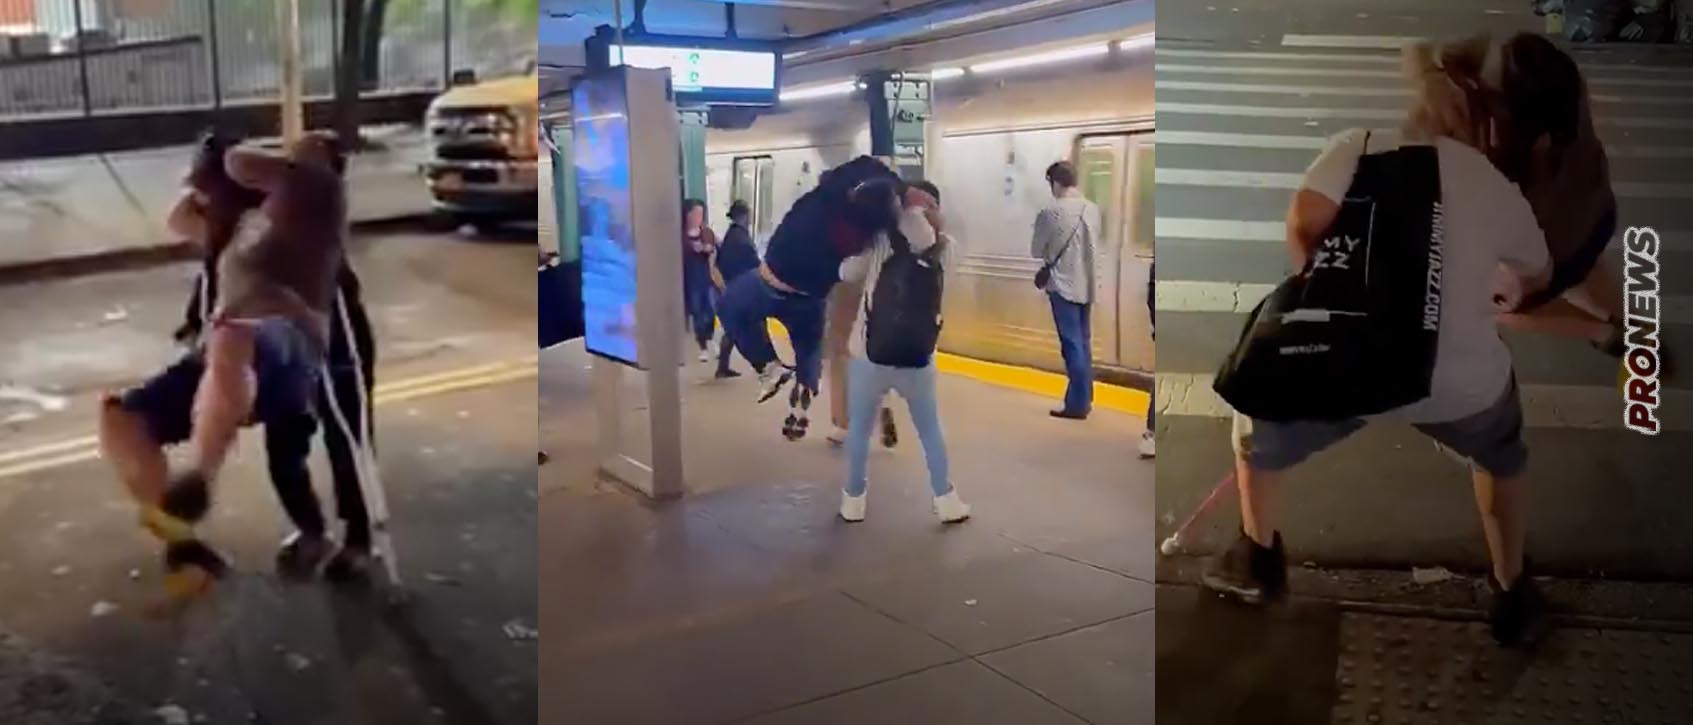 Βίντεο: Επικίνδυνος τύπος κάνει λαβές κατς σε τυχαίους ανθρώπους στους δρόμους της Νέας Υόρκης